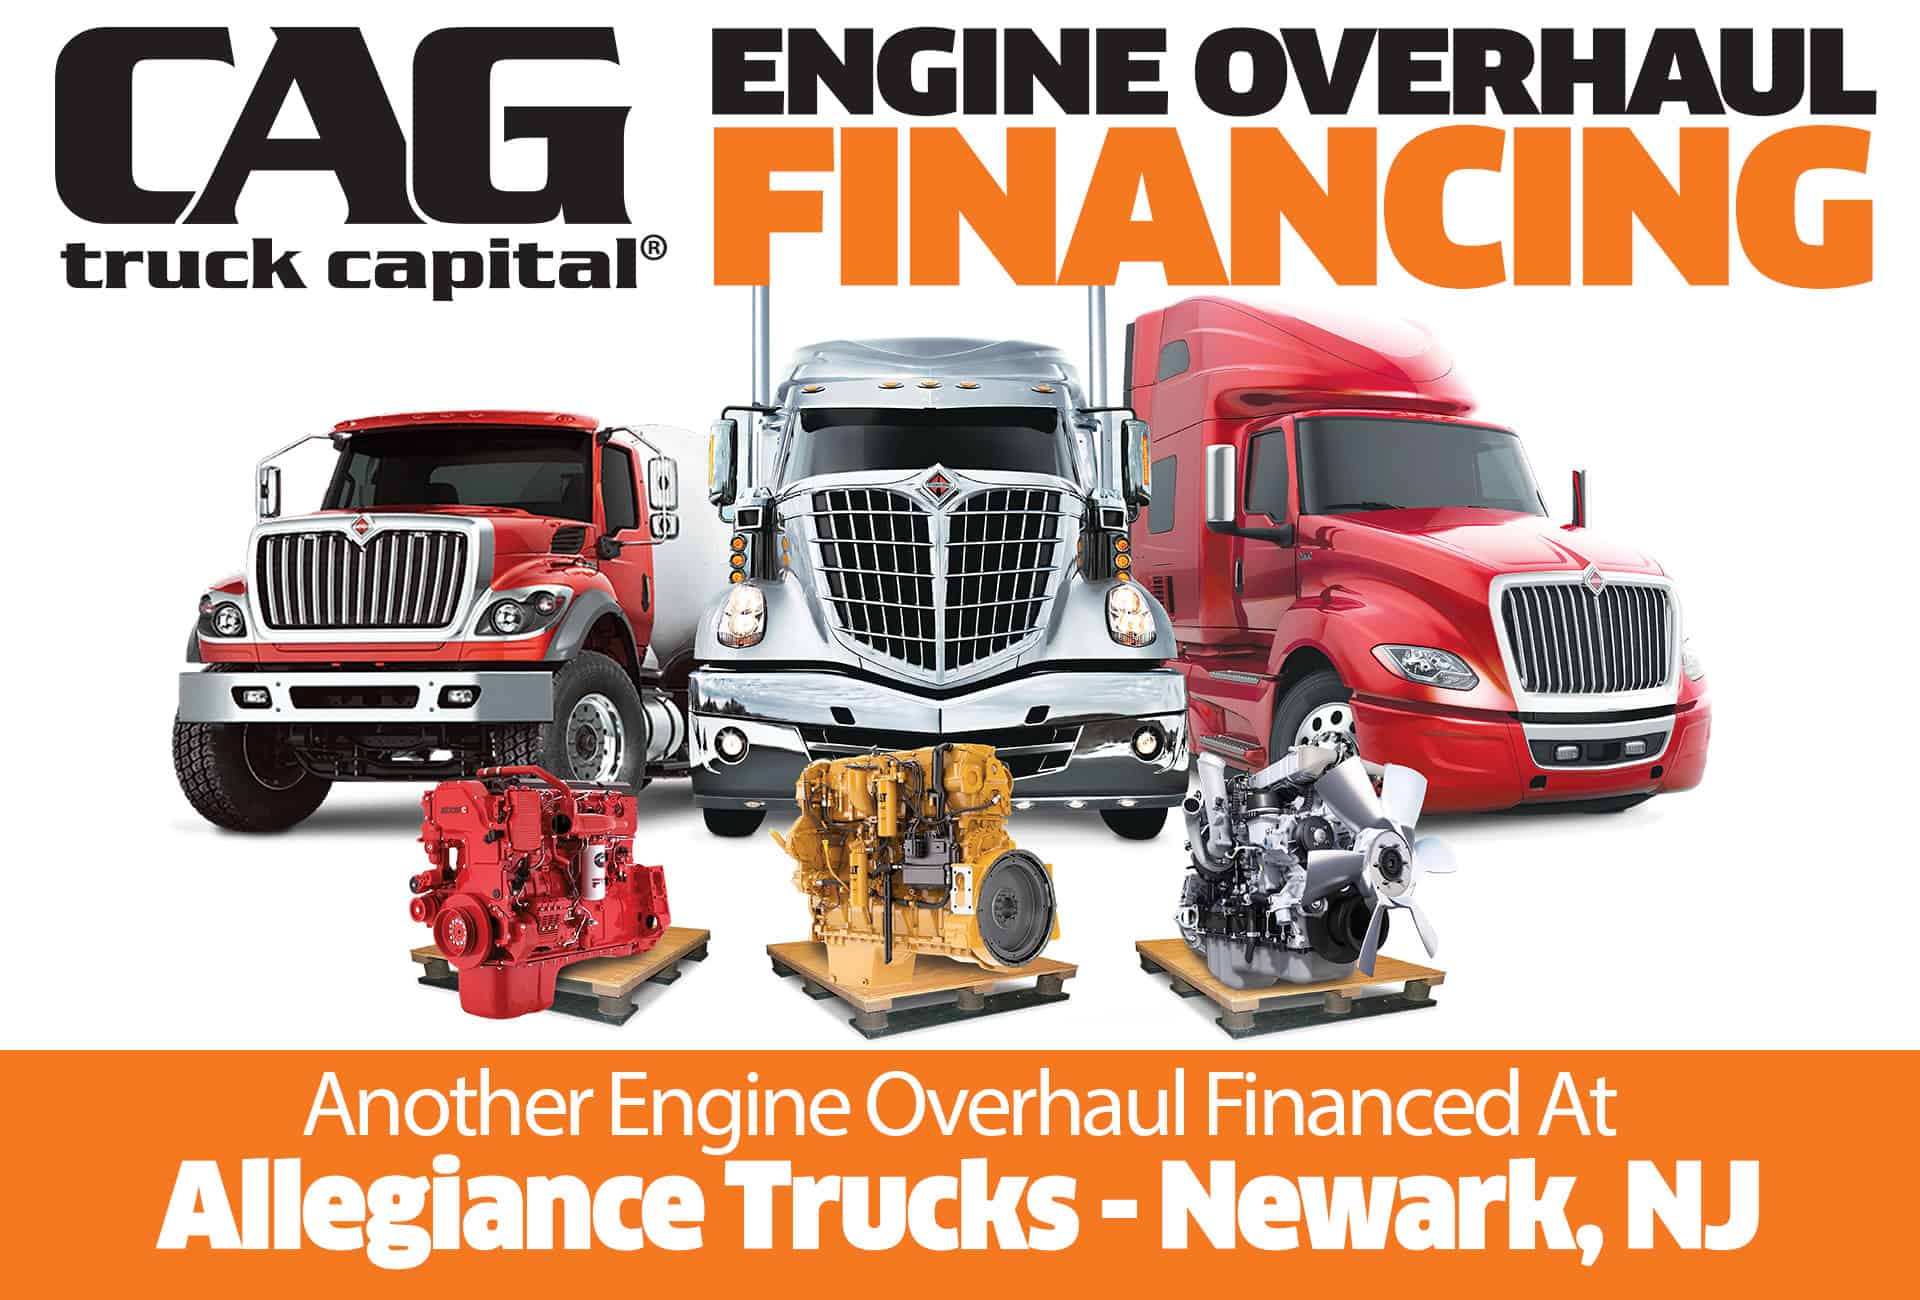 Allegiance Trucks of Newark NJ